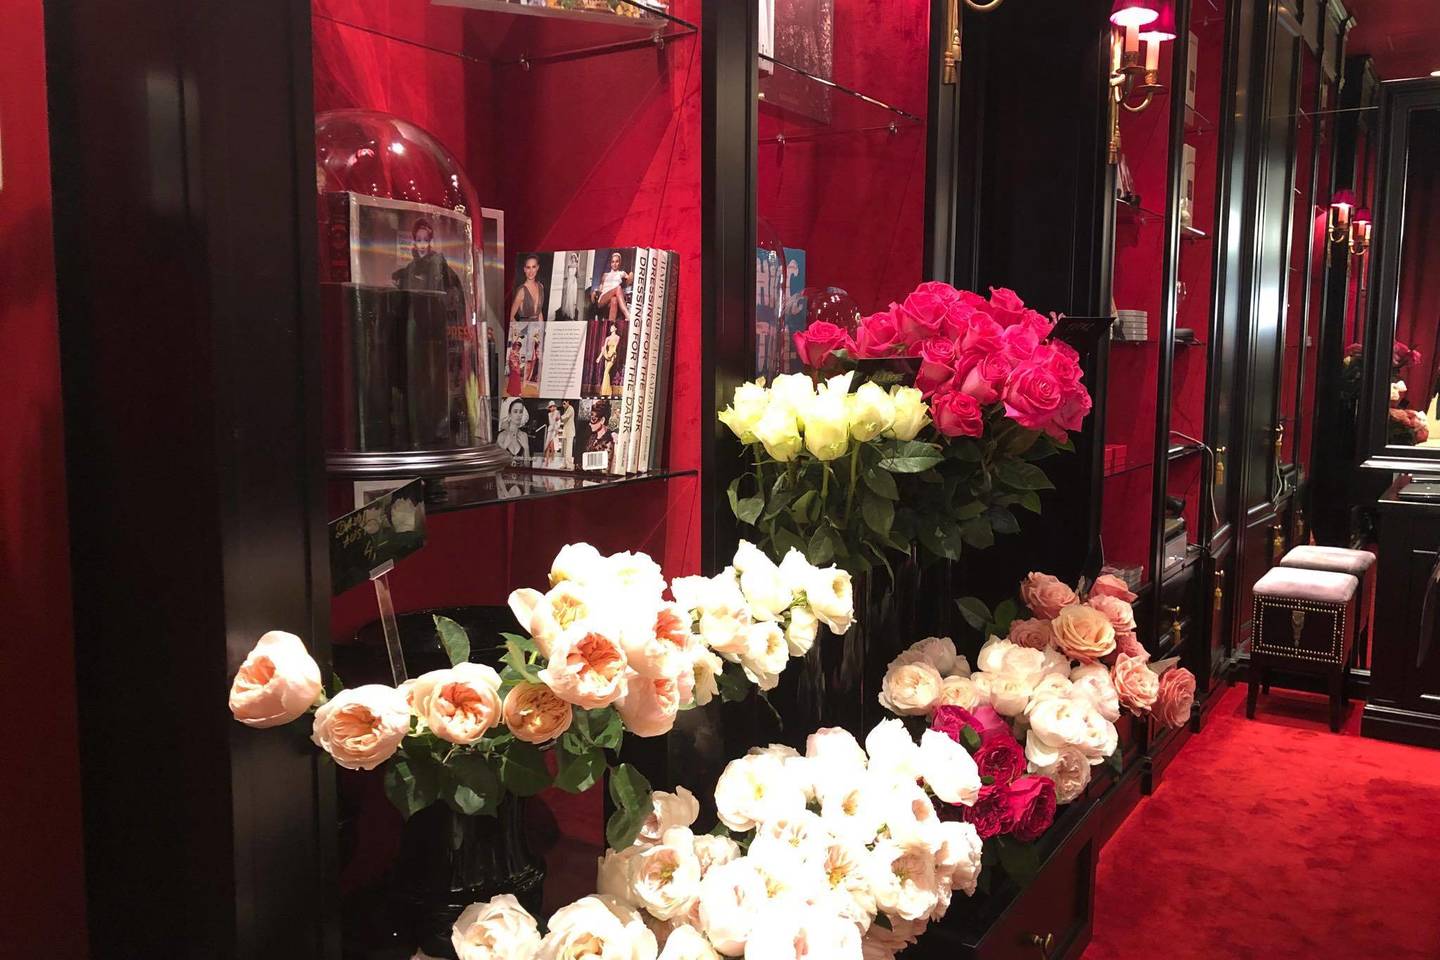  Gėlių ir kvapų salono įkūrėjas floristas Mantas Petruškevičius savo darbą vadina mylima veikla.